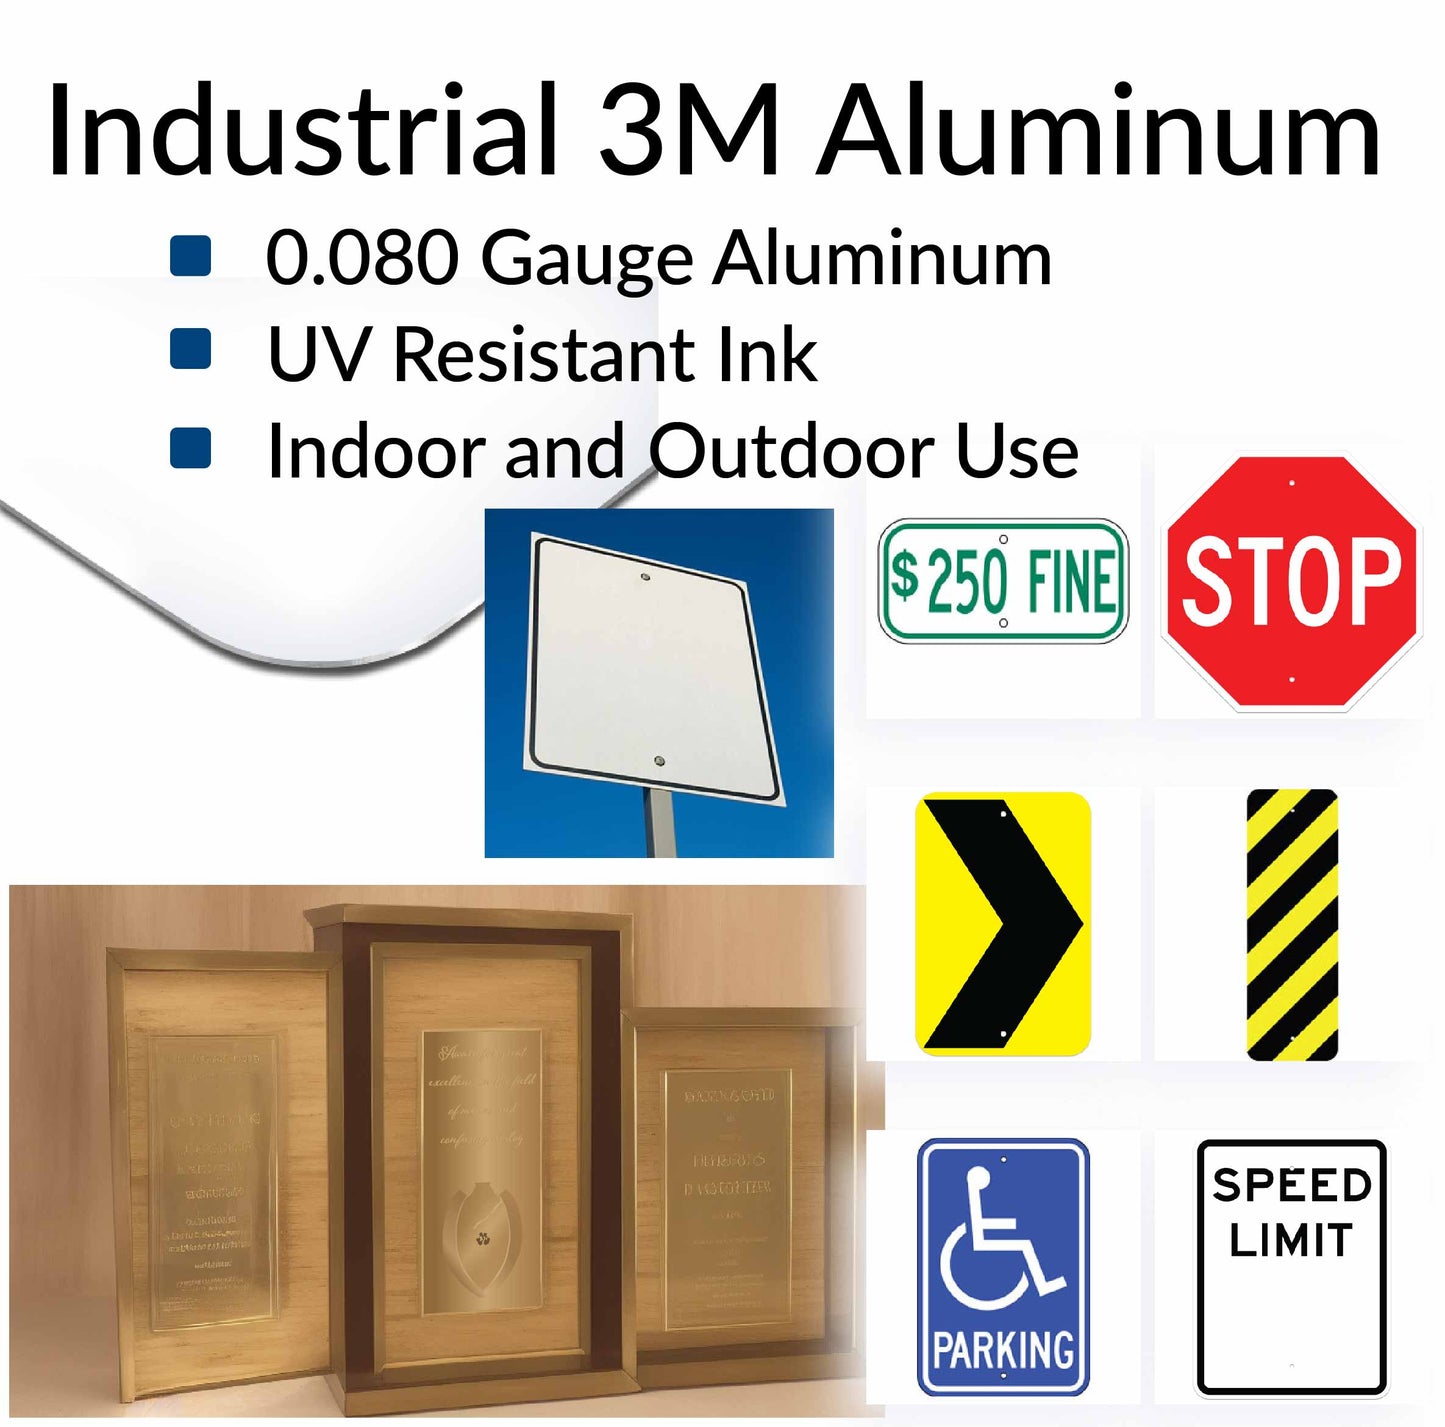 Industrial 3M Aluminum